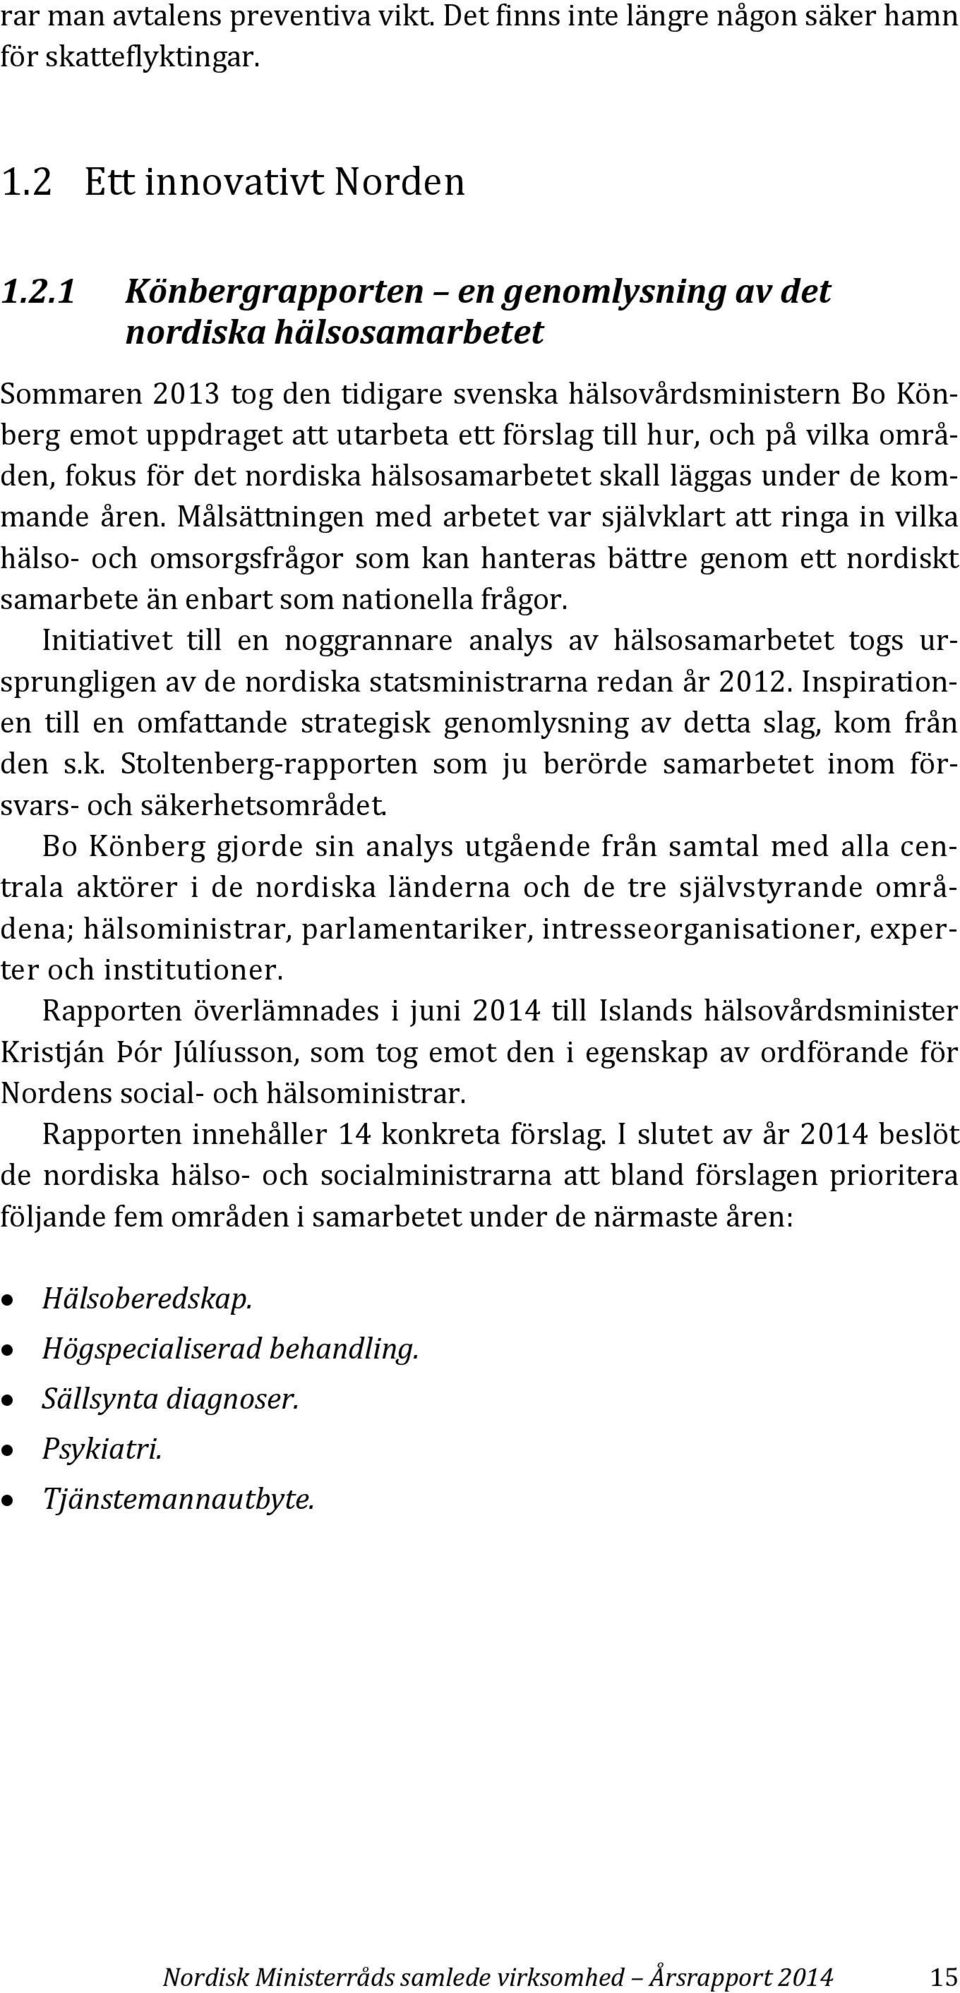 1 Könbergrapporten en genomlysning av det nordiska hälsosamarbetet Sommaren 2013 tog den tidigare svenska hälsovårdsministern Bo Könberg emot uppdraget att utarbeta ett förslag till hur, och på vilka